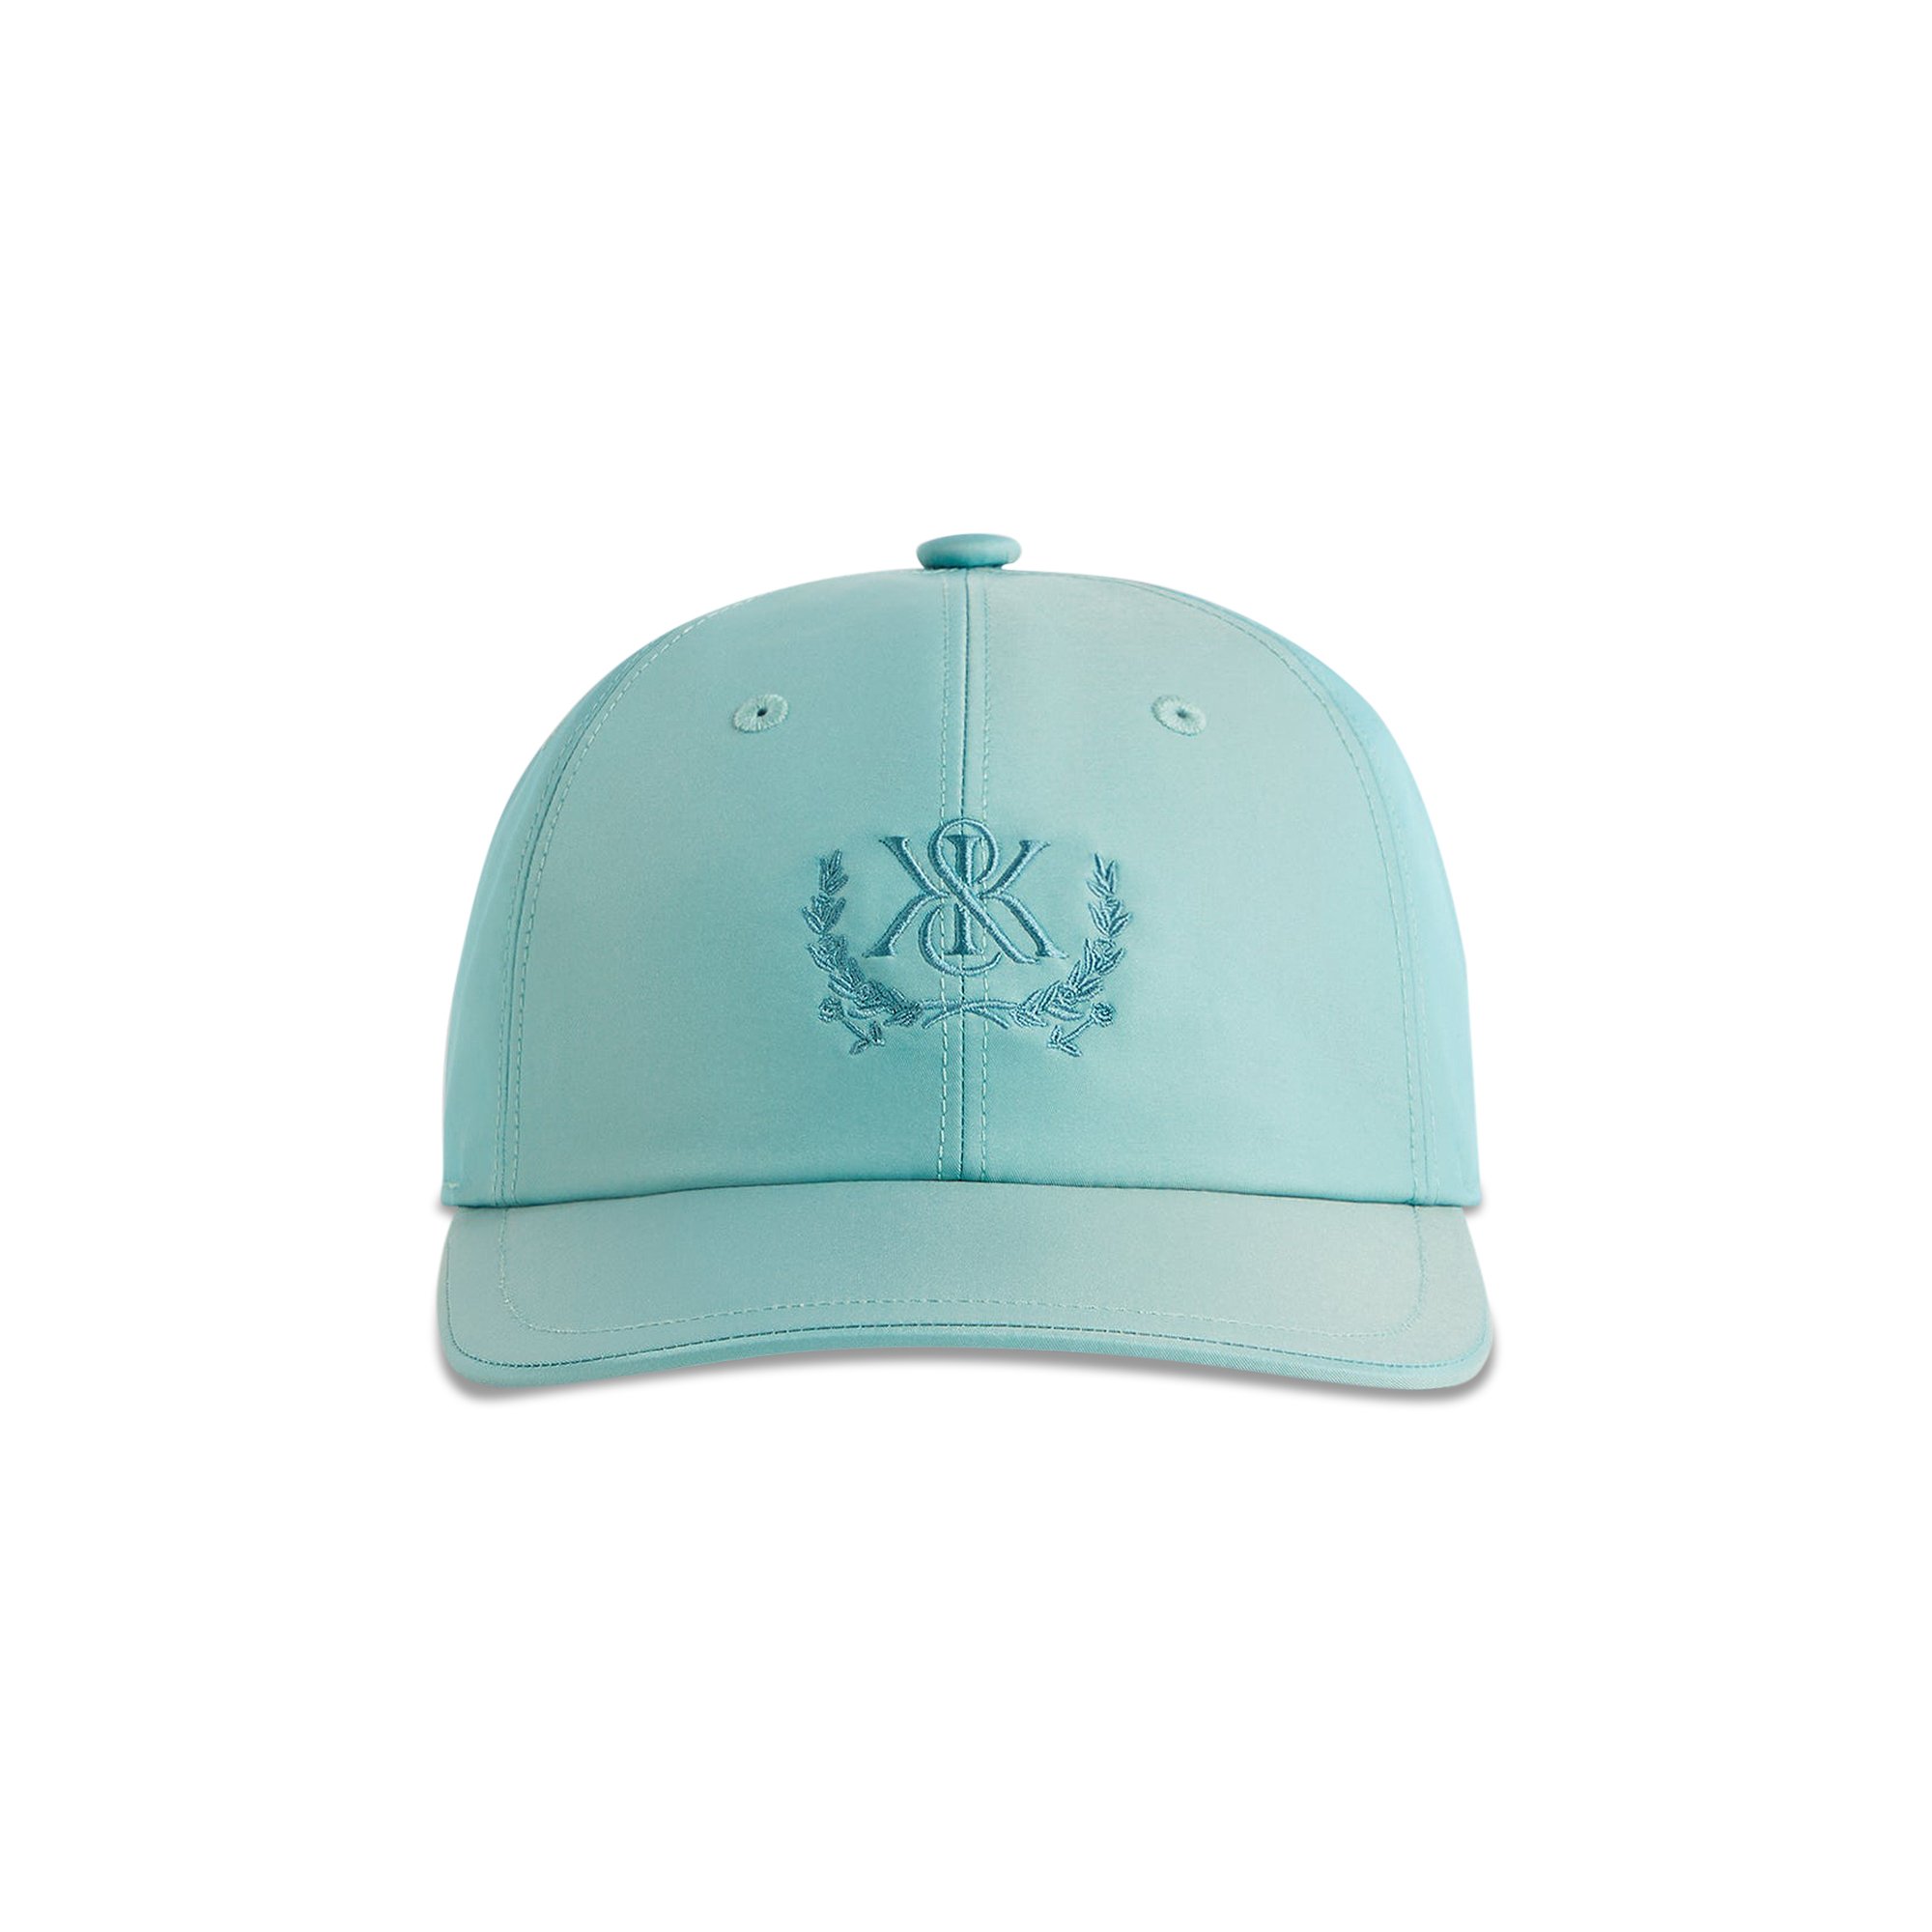 Buy Kith Leggero Low Profile Cap 'System' - KHM050548 5015 | GOAT